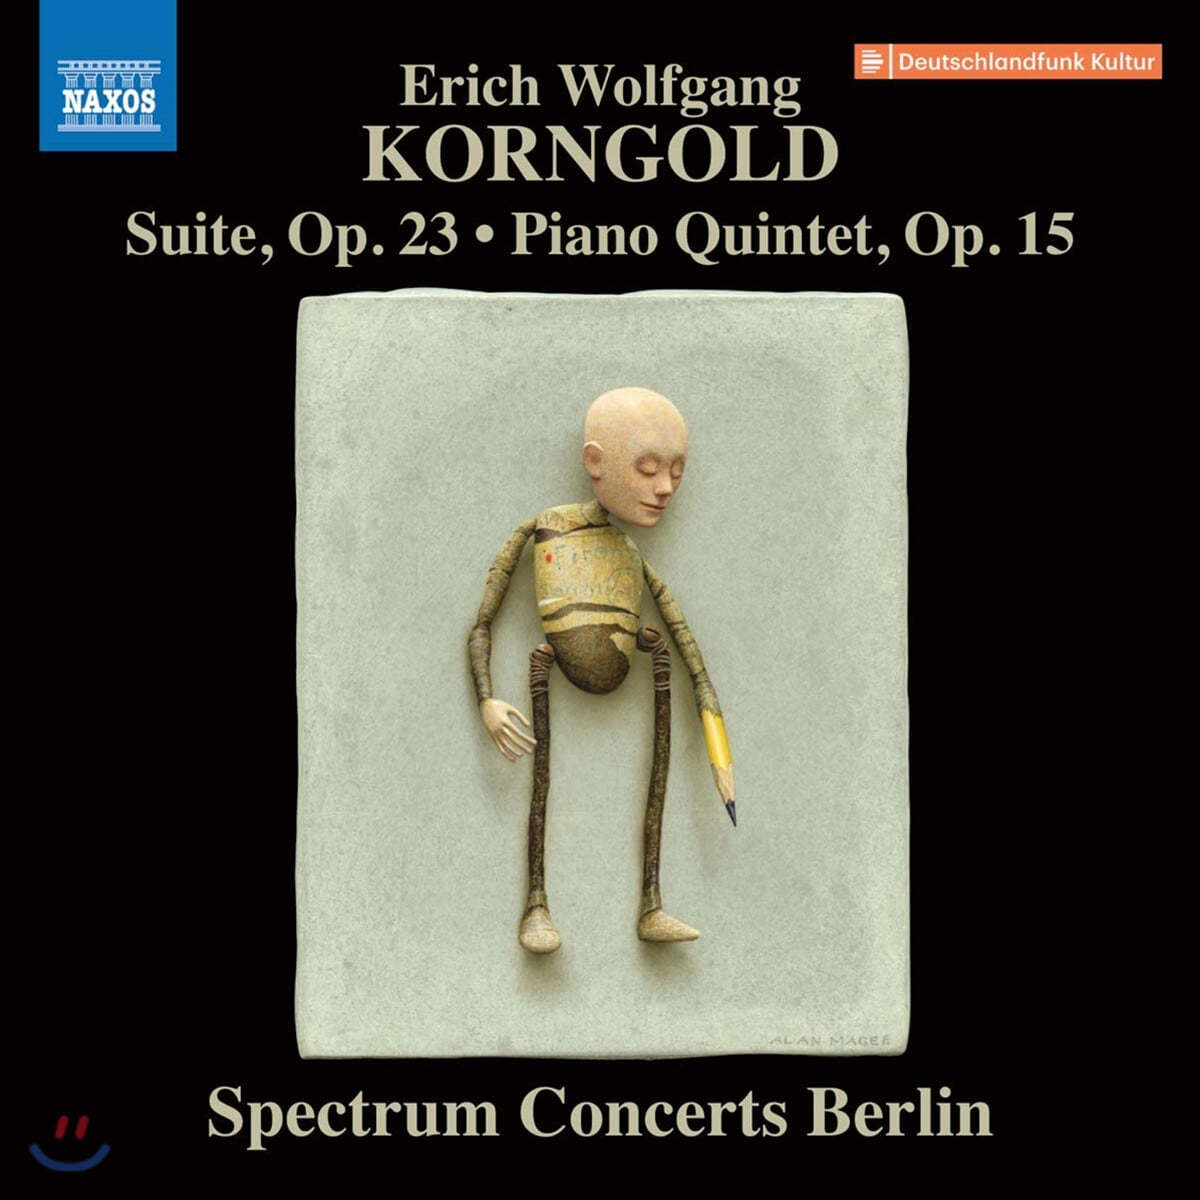 클라라 주미 강 / Spectrum Concerts Berlin 코른골트: 피아노 5중주, 모음곡 (Korngold: Piano Quintet, Suite) 